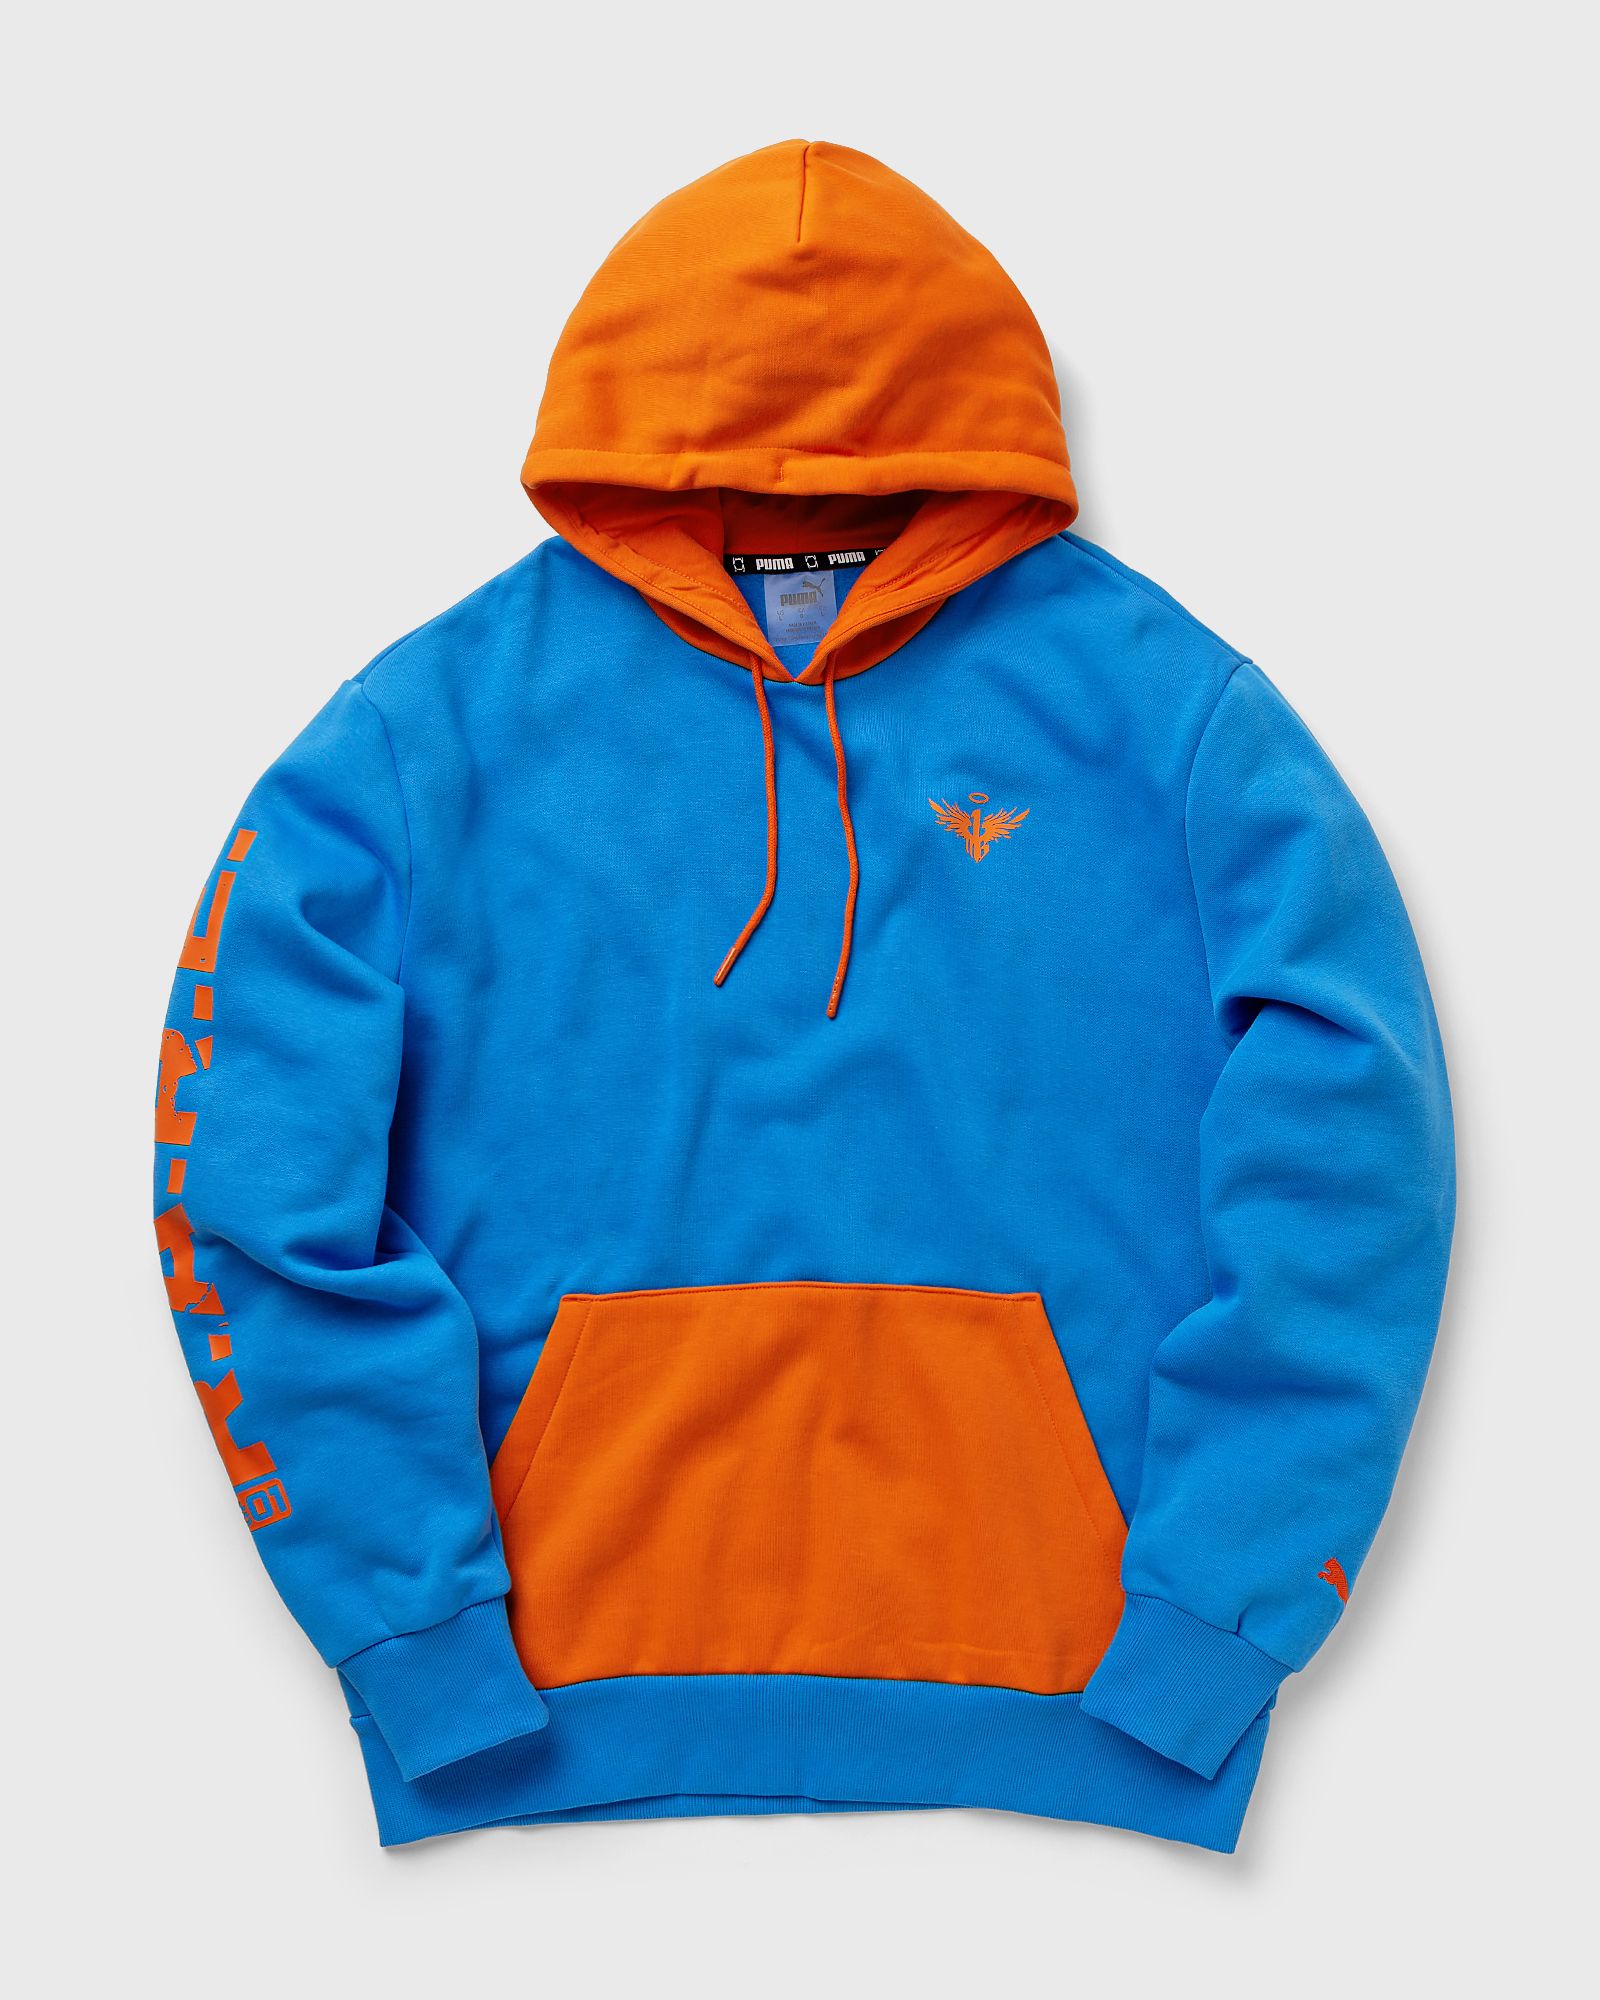 Puma - melo colorblock hoodie men hoodies blue|orange in größe:l